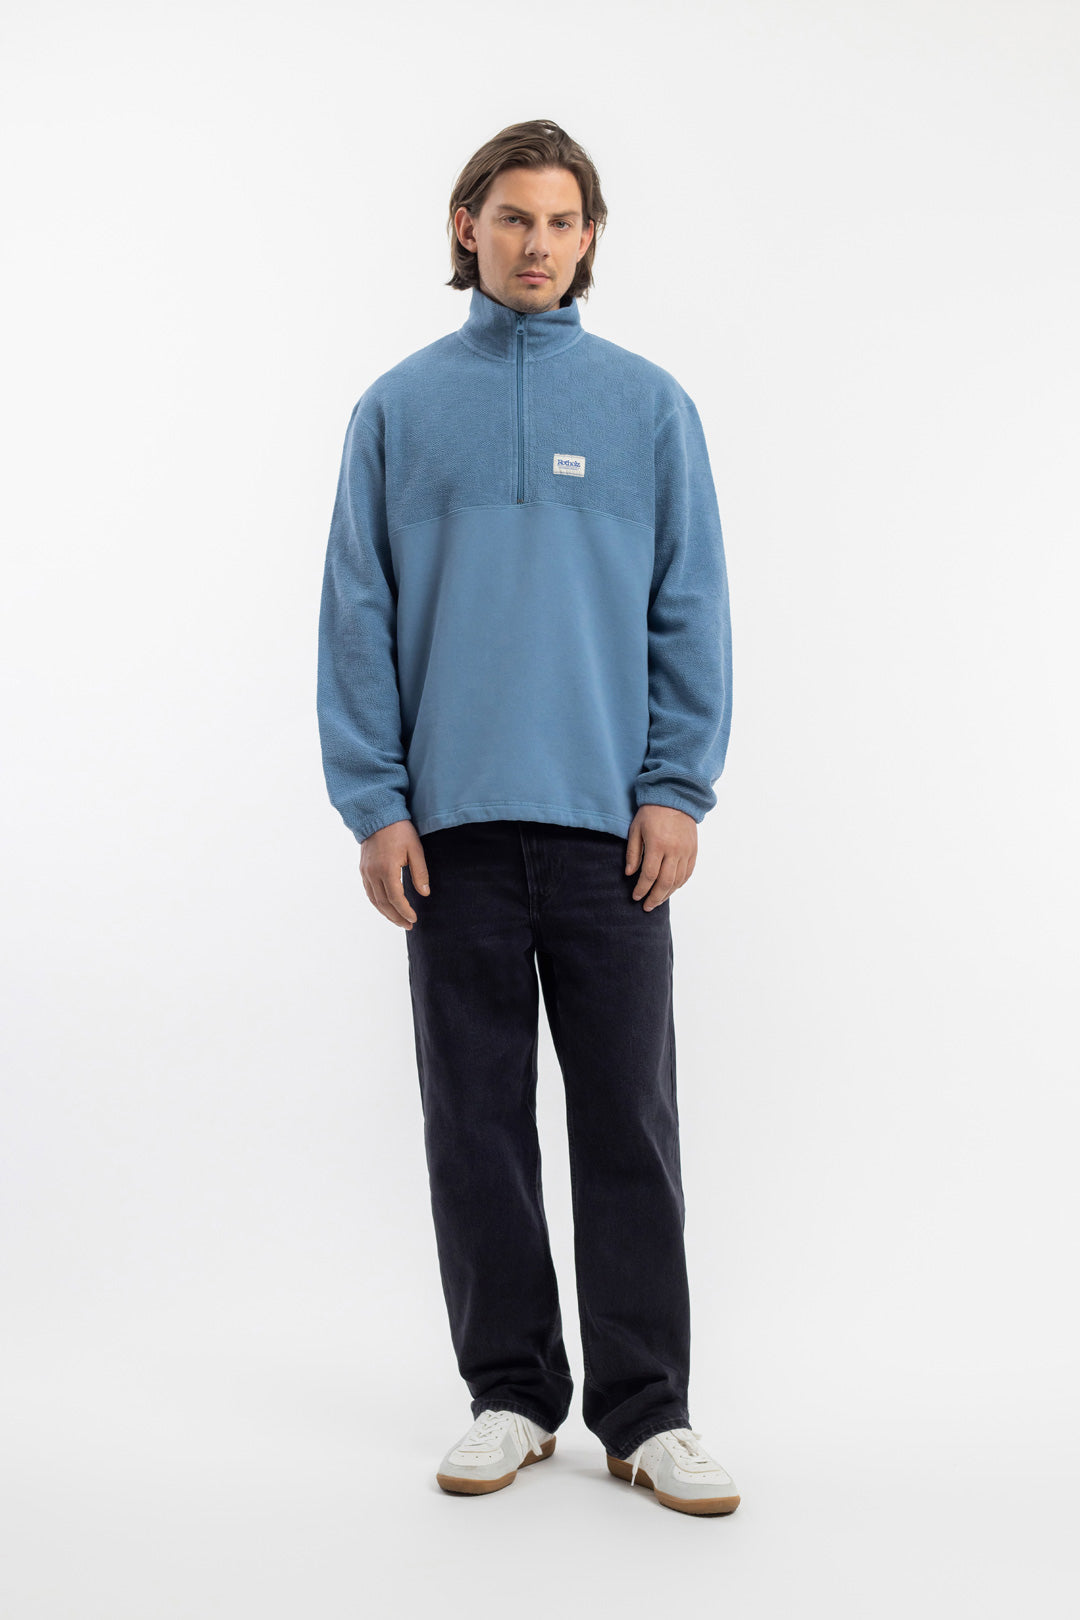 Hellblaues Sweatshirt Divided aus 100% Bio-Baumwolle von Rotholz